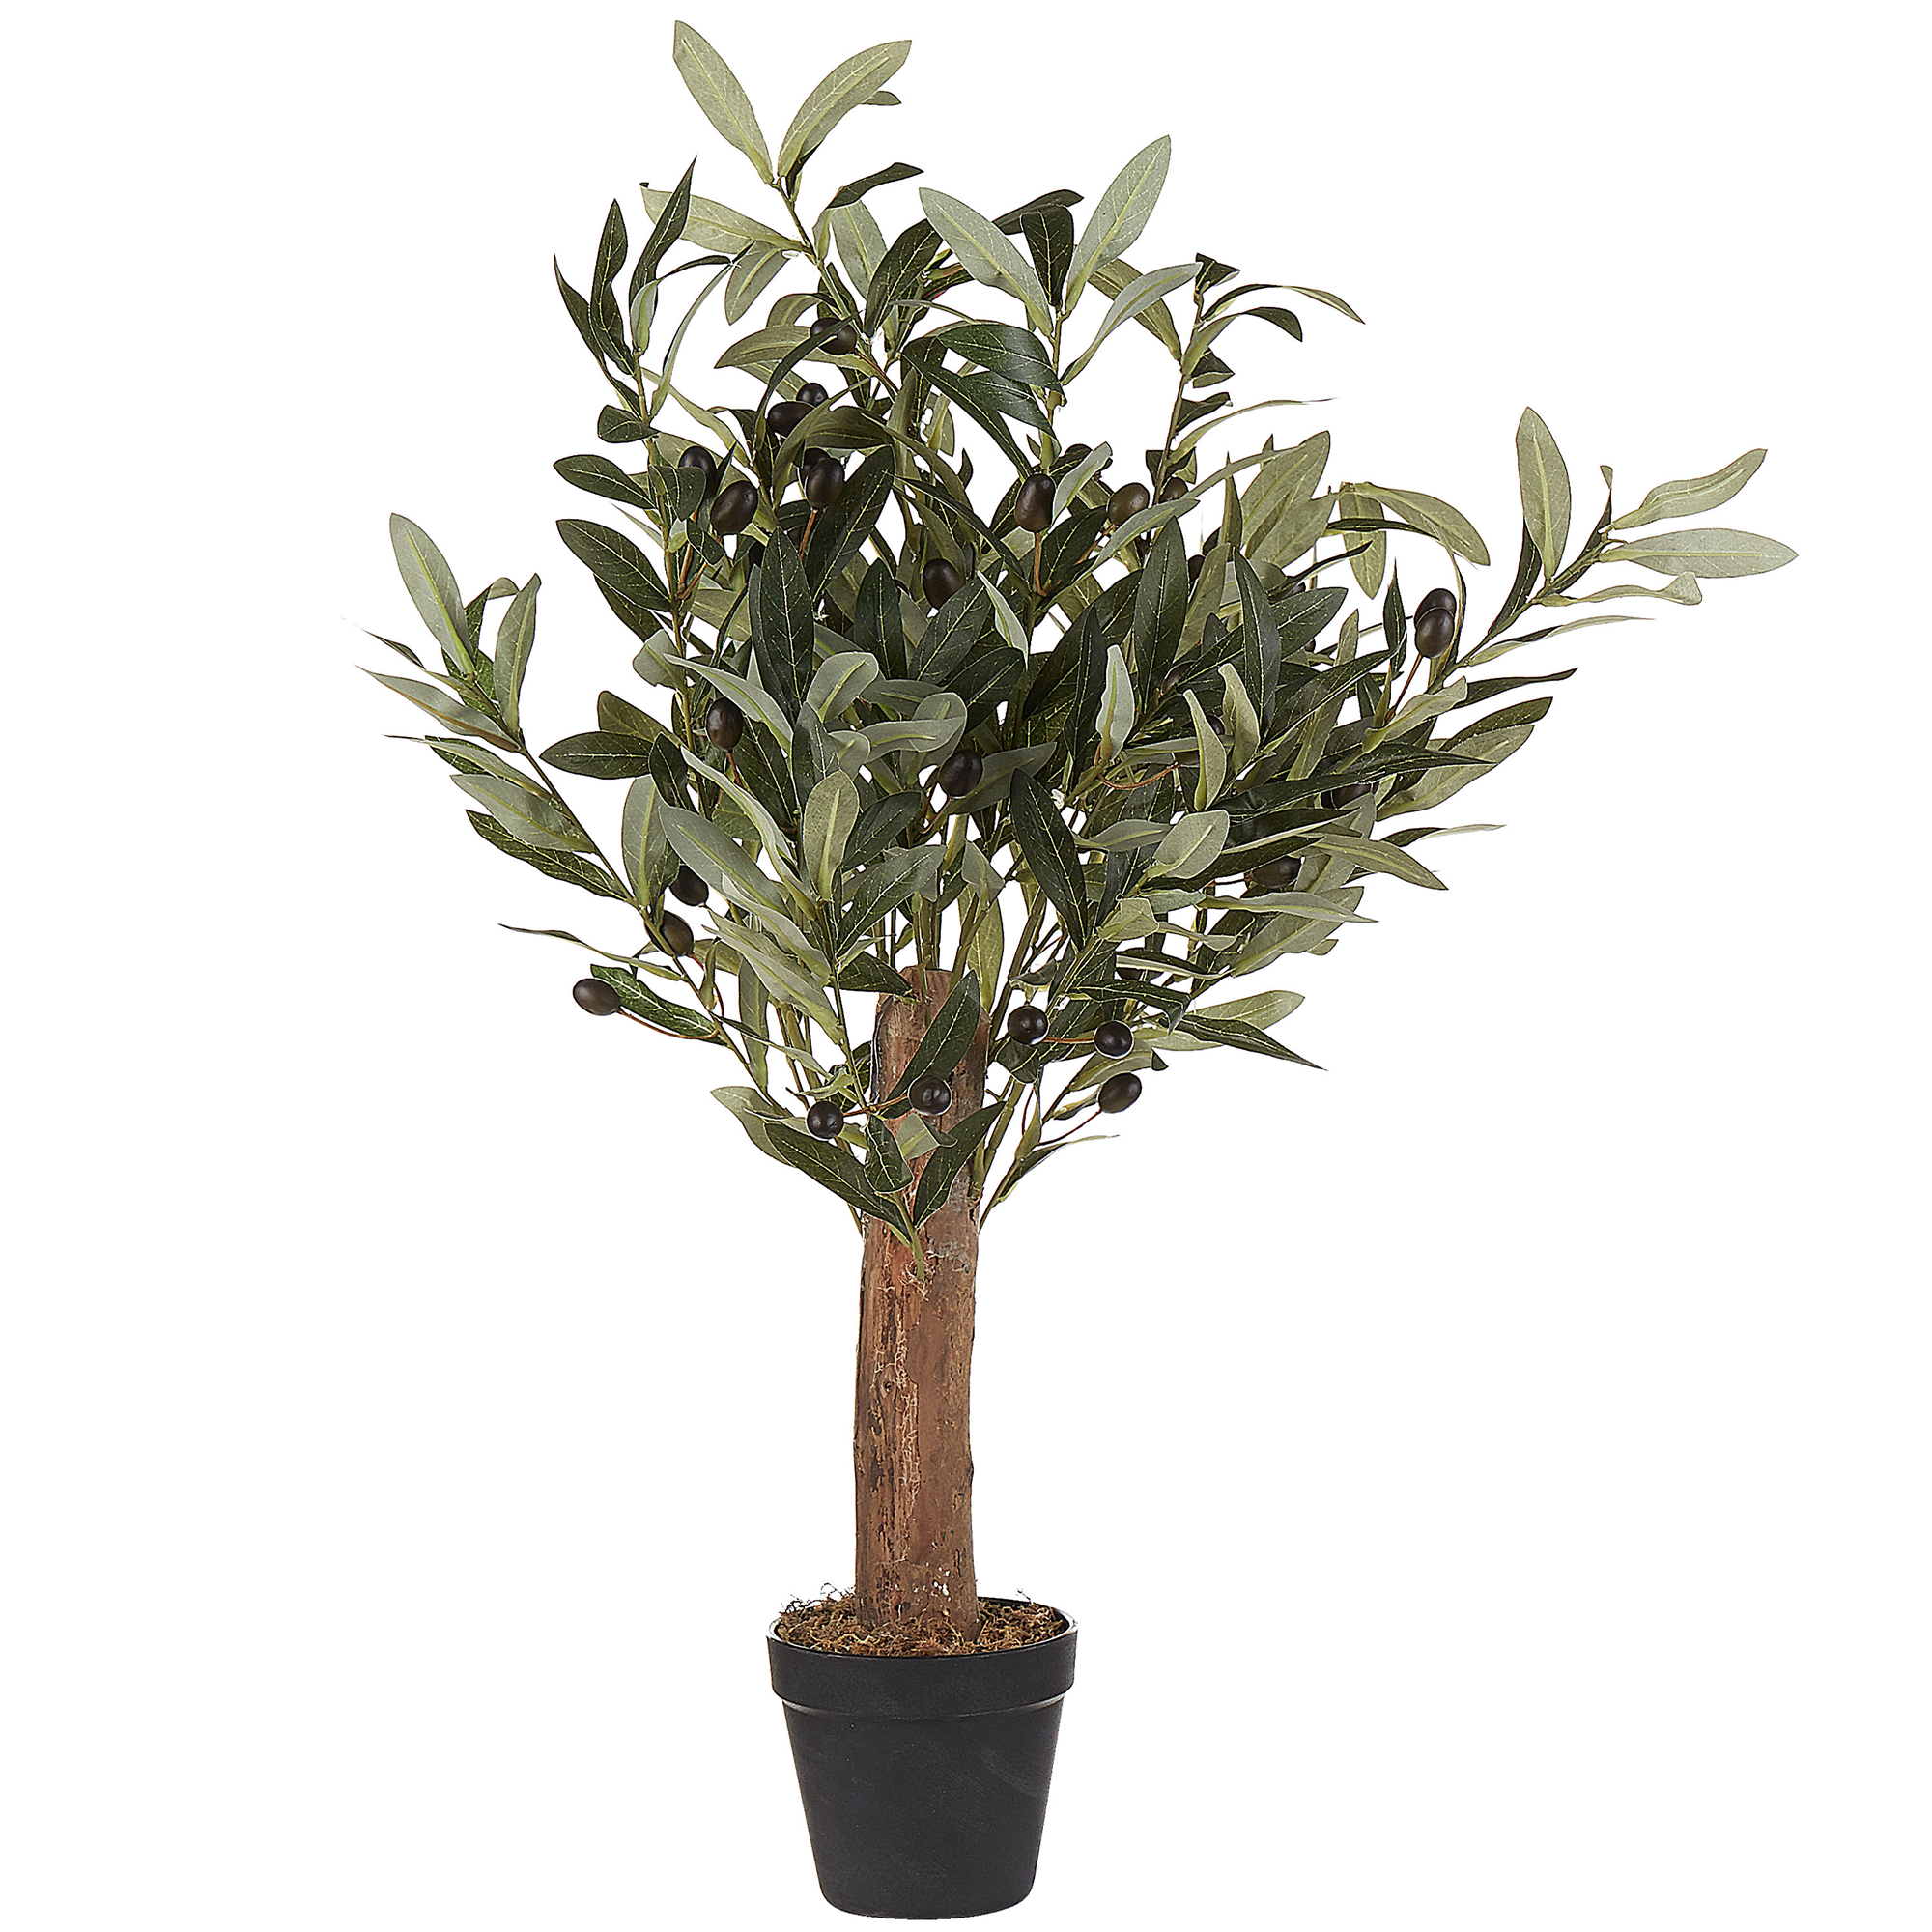 Planta olivo artificial 110 cm realista. Envío gratis.